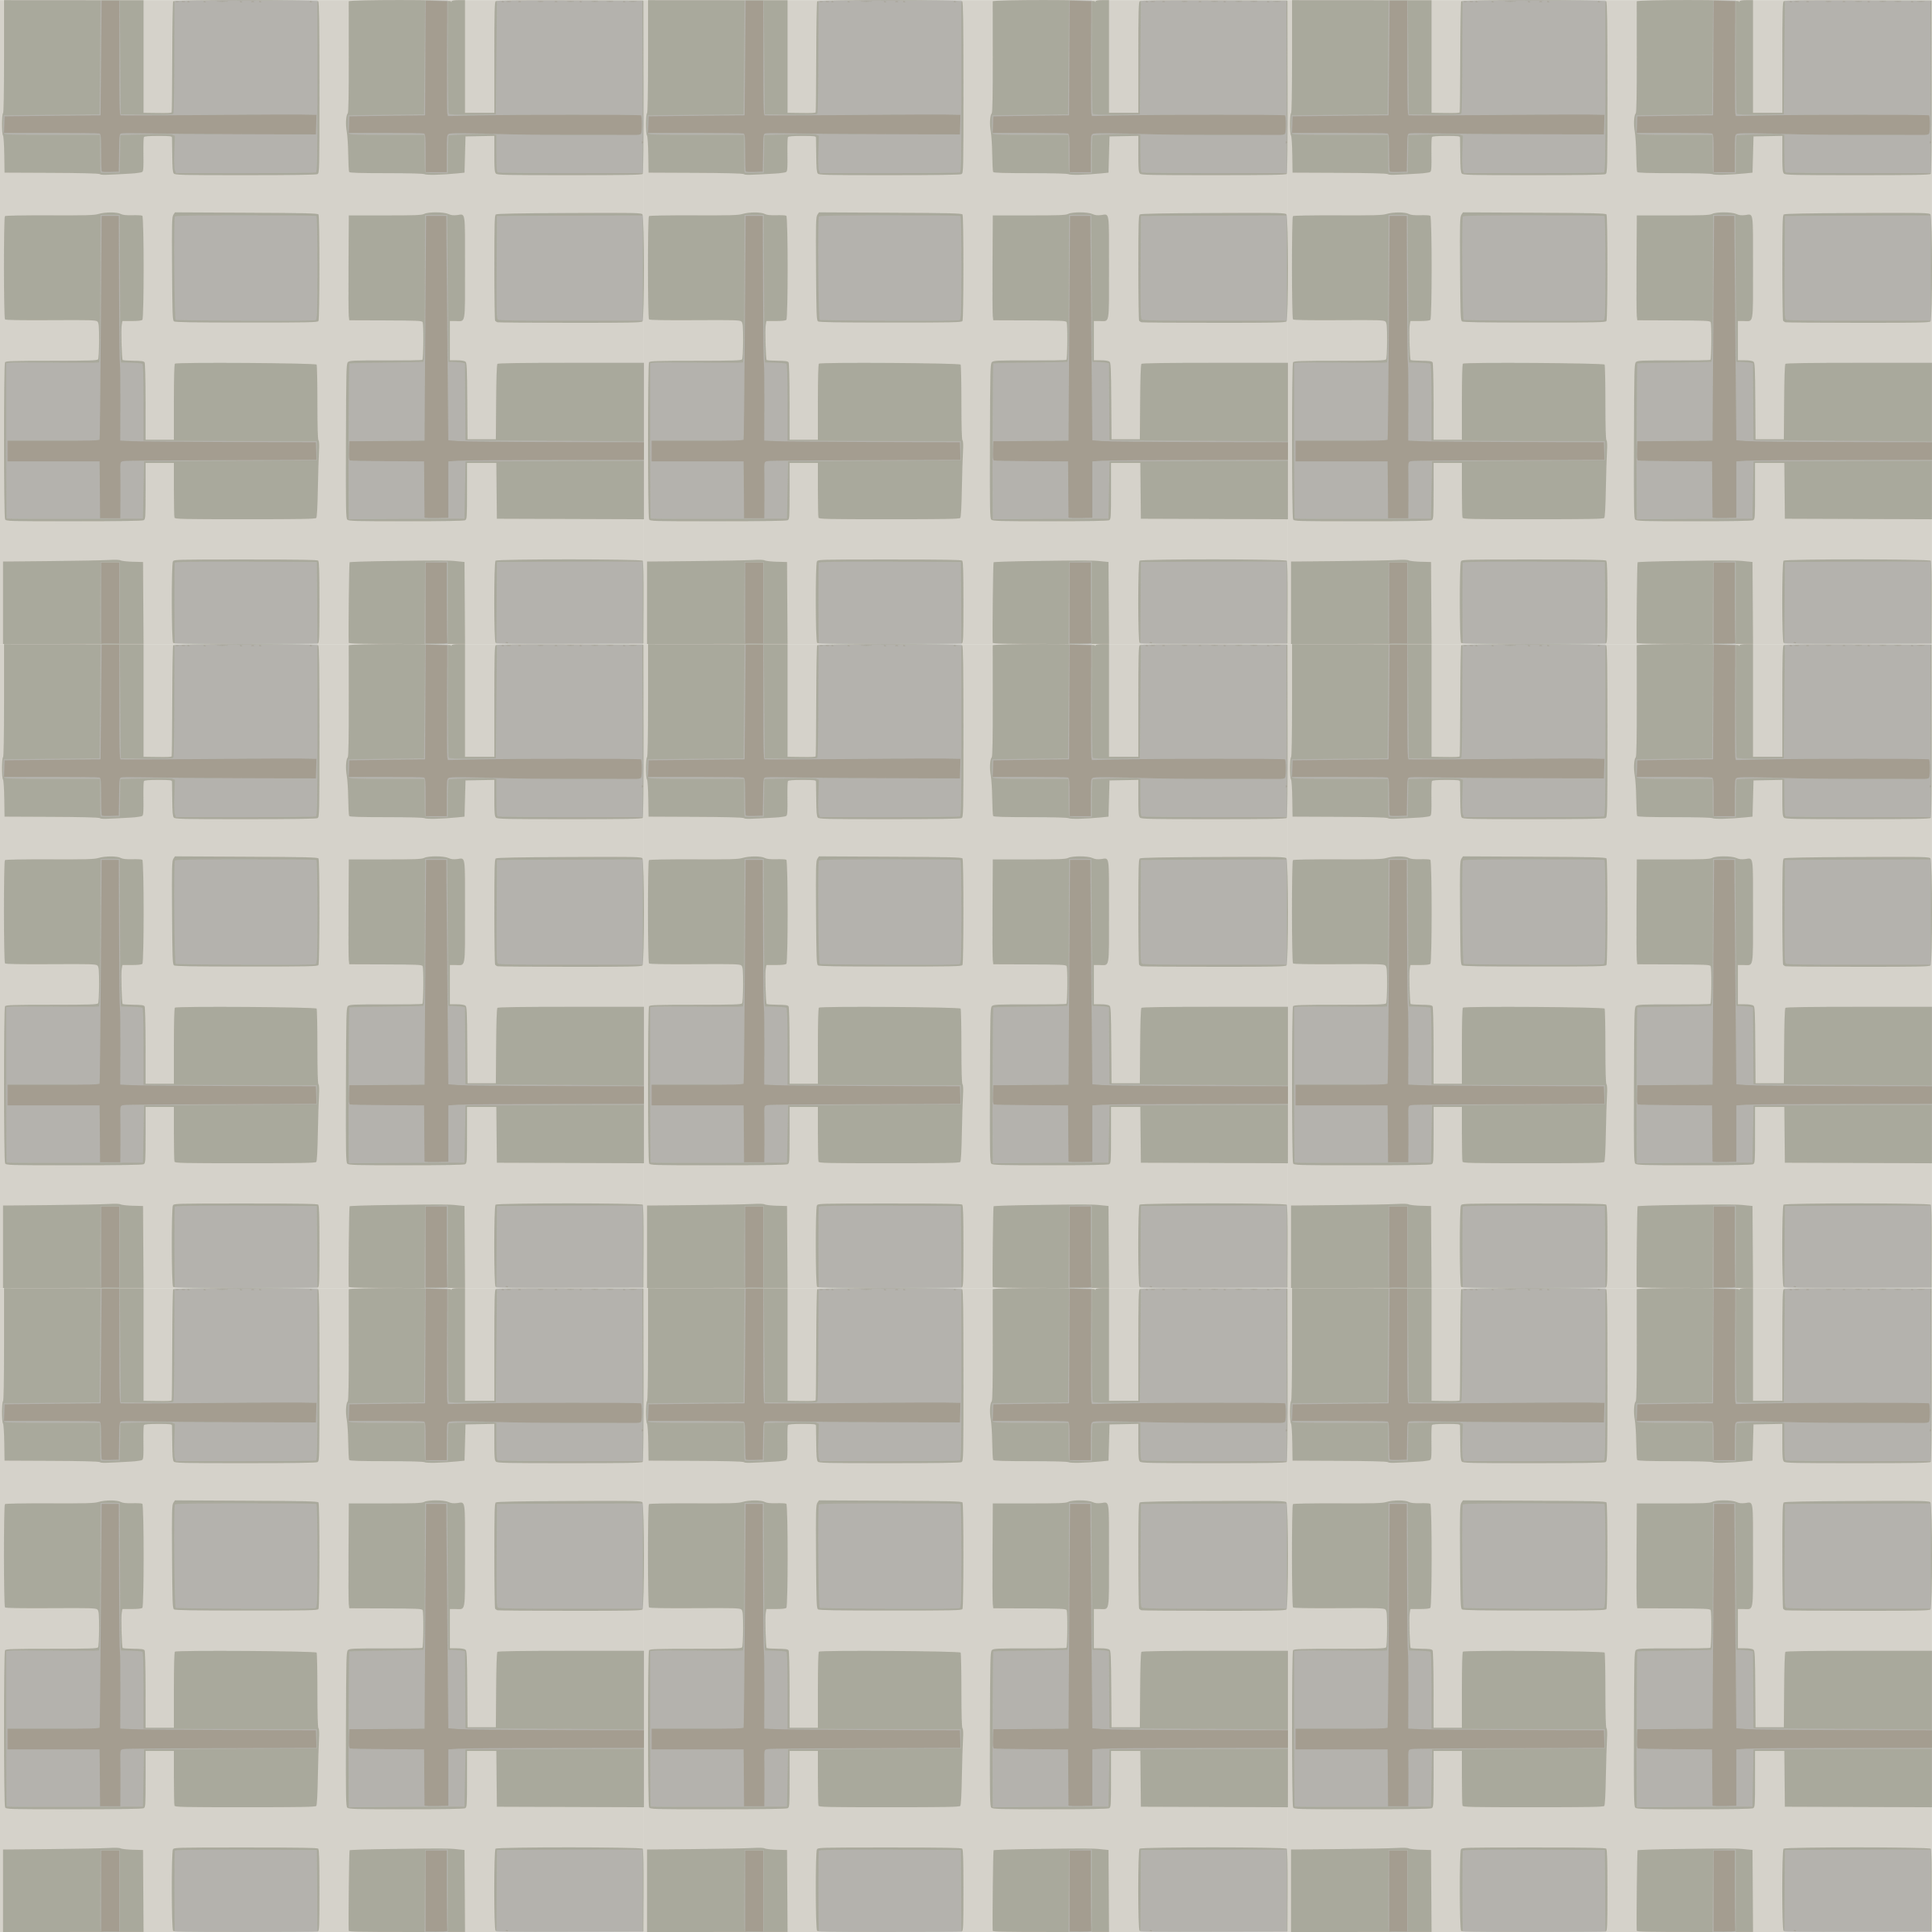 Floor checkered floor